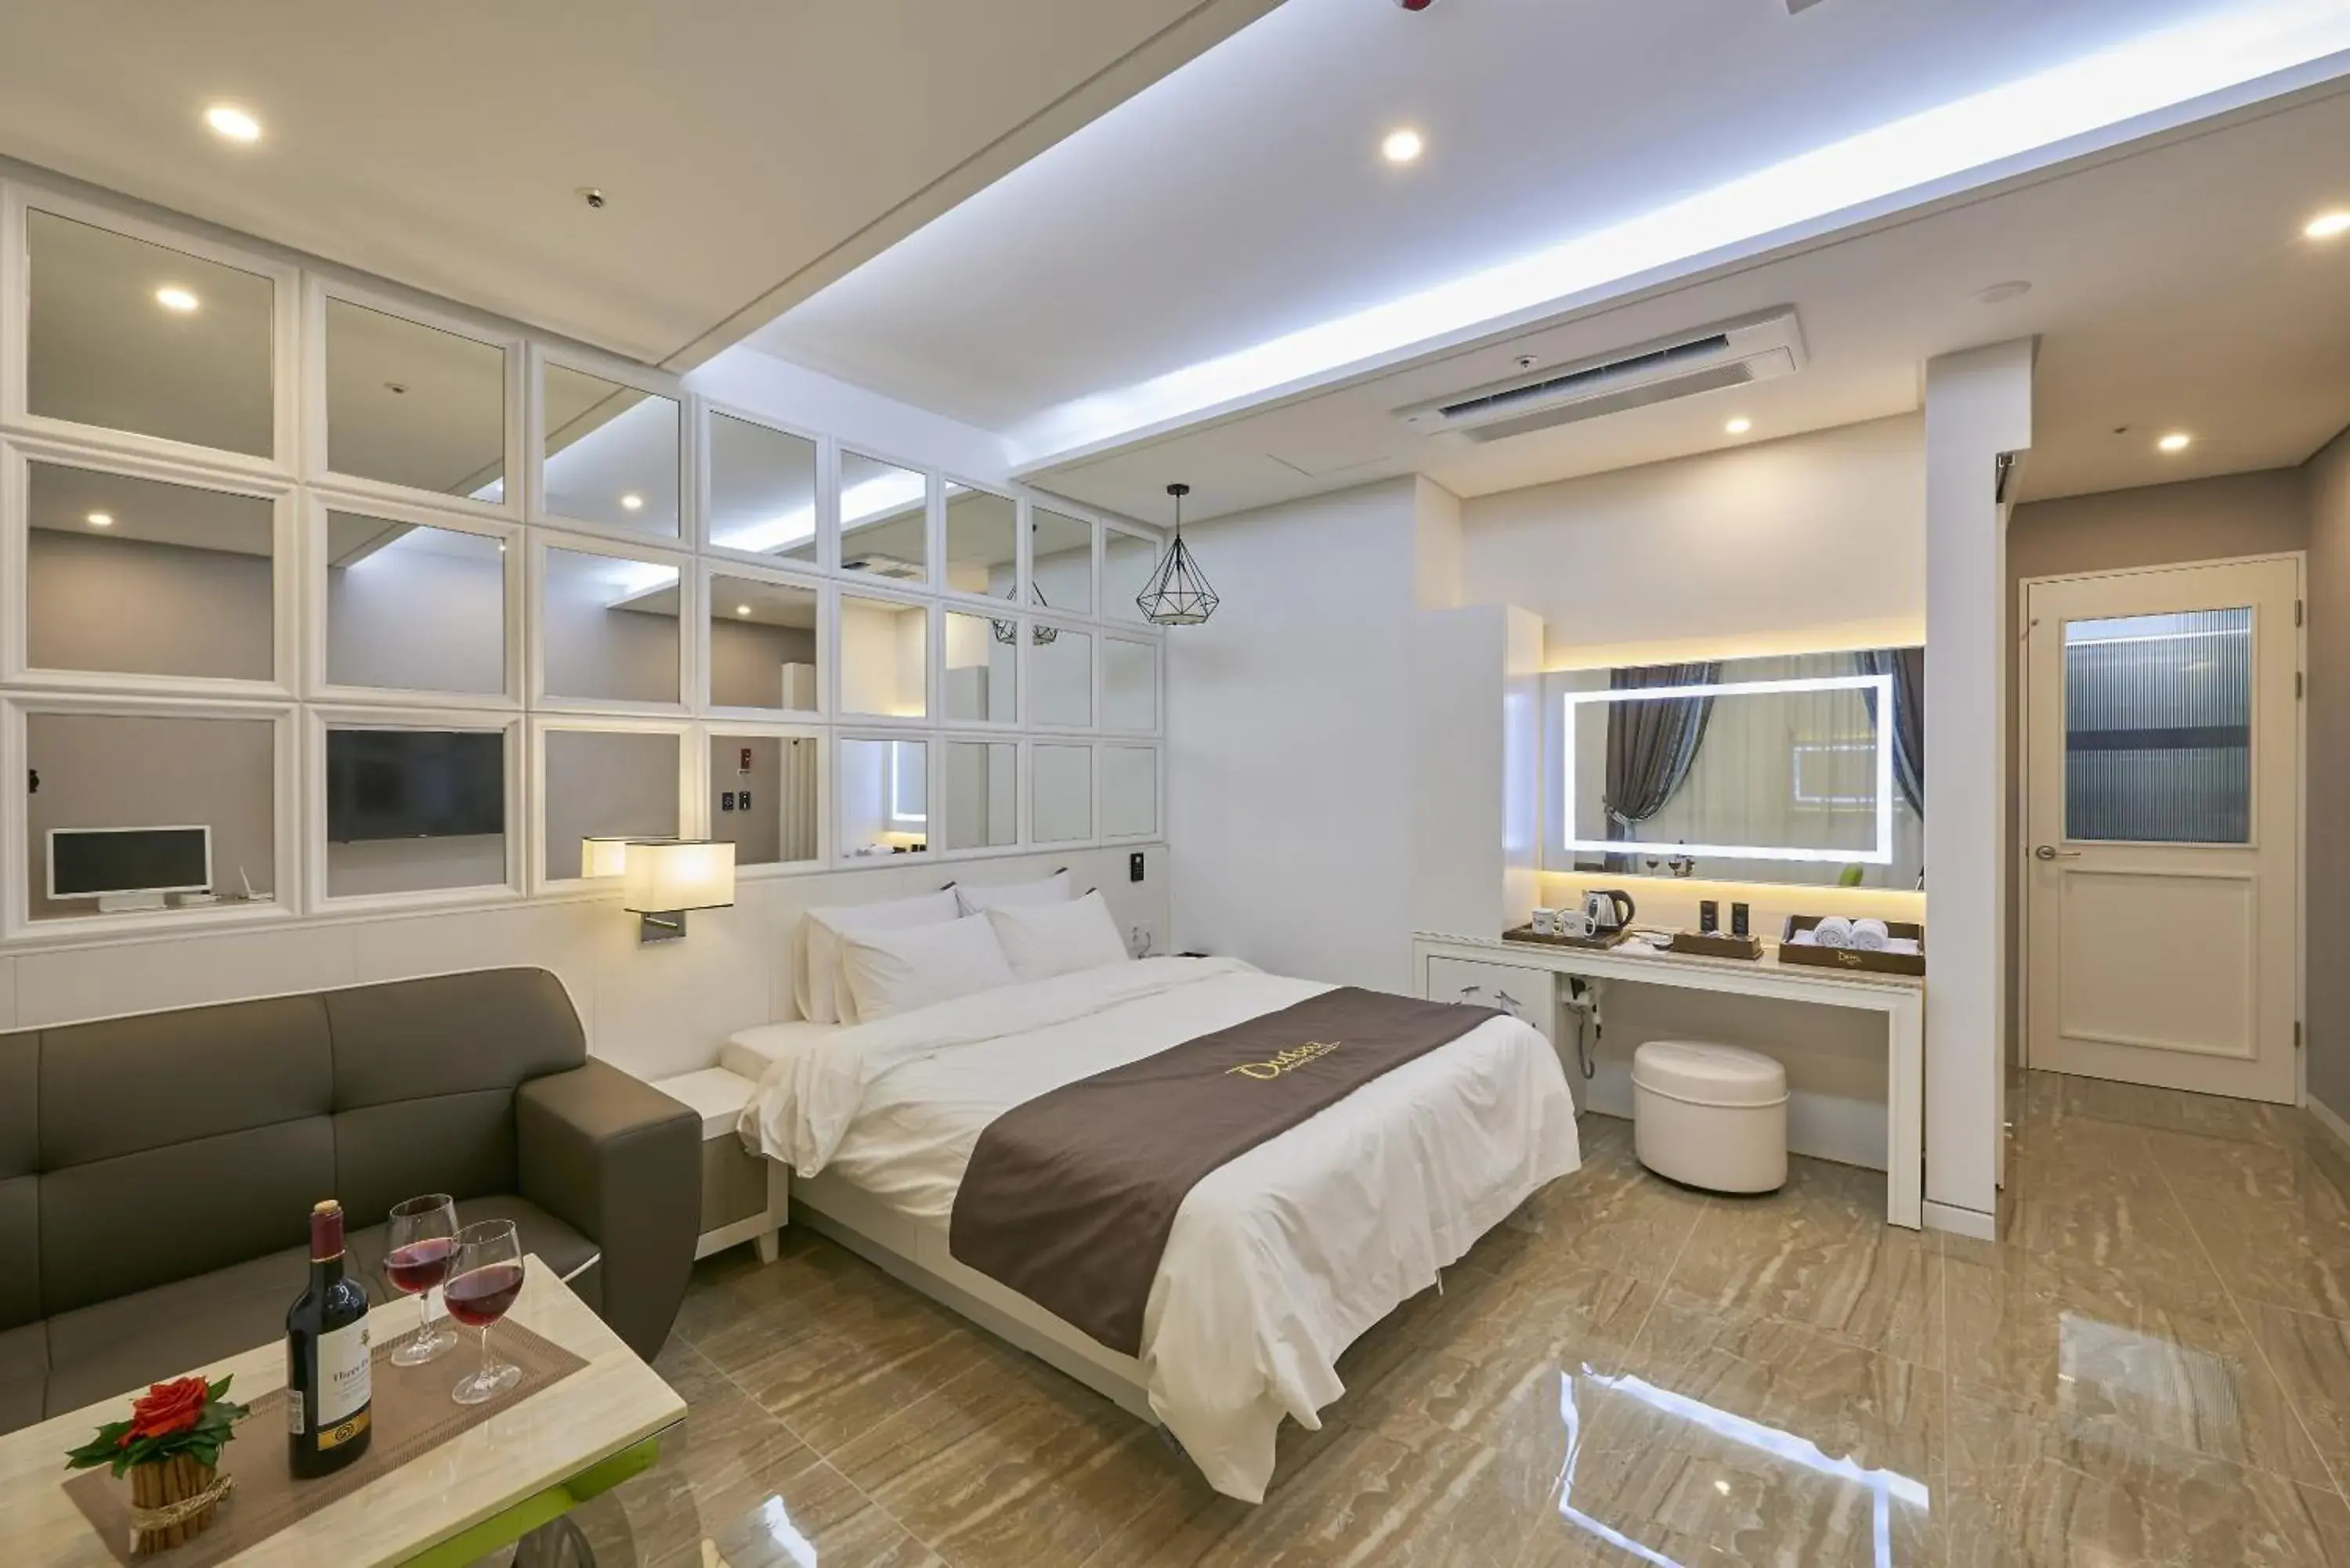 Photo of the whole room, Room Photo in Dubai Hotel (Korea Quality)